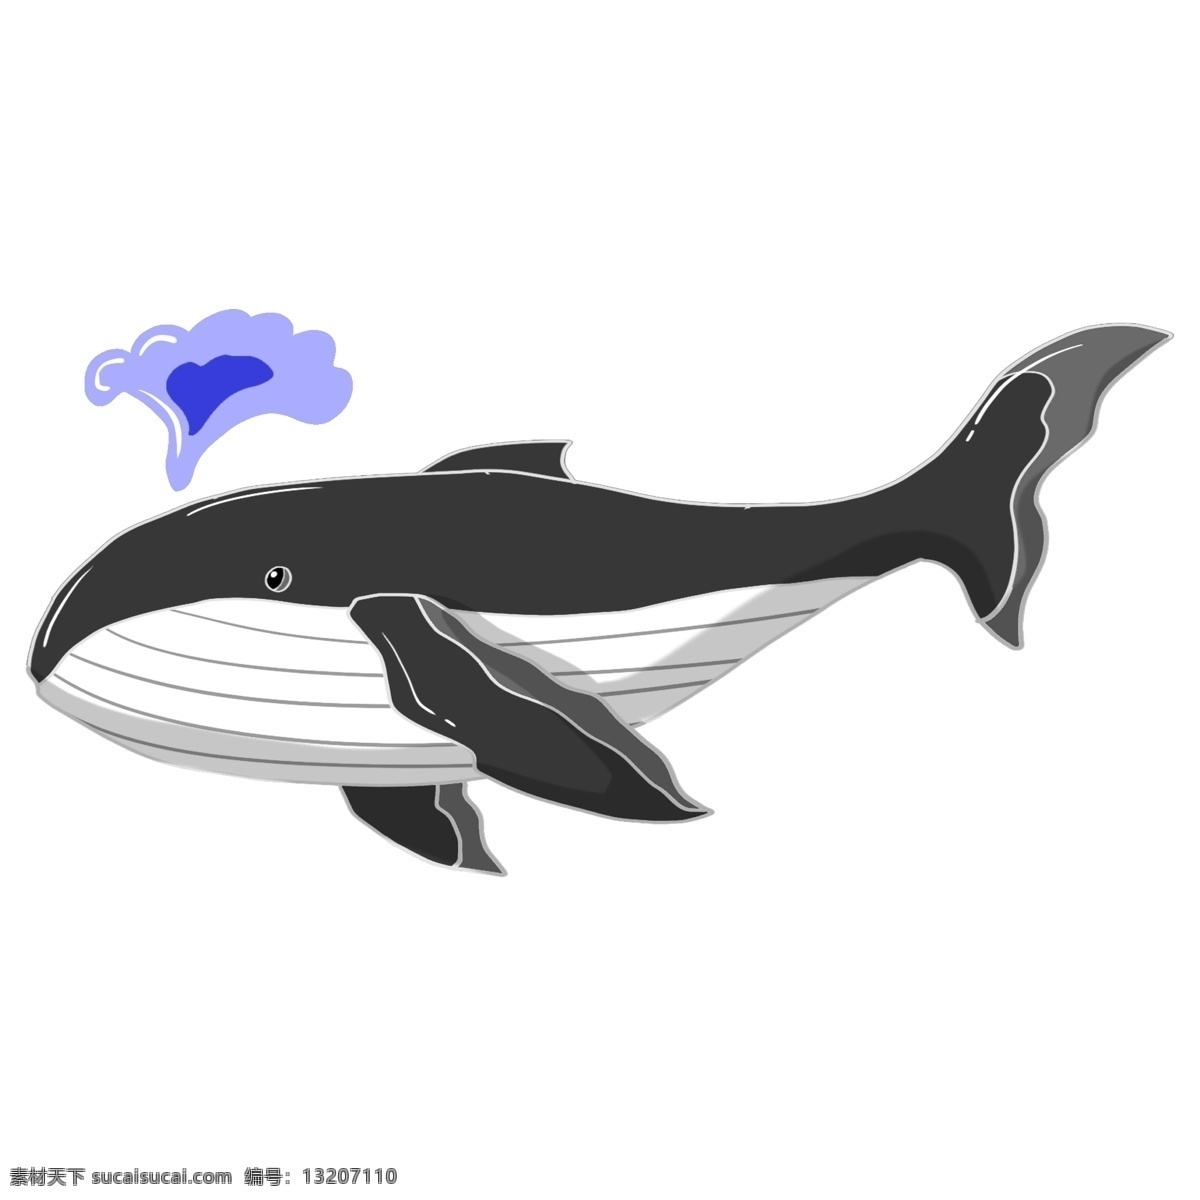 黑色 戏水 鲸鱼 插画 黑色的鲸鱼 手绘鲸鱼 游动的鲸鱼 海洋动物 喷口水的鲸鱼 蓝色的口水